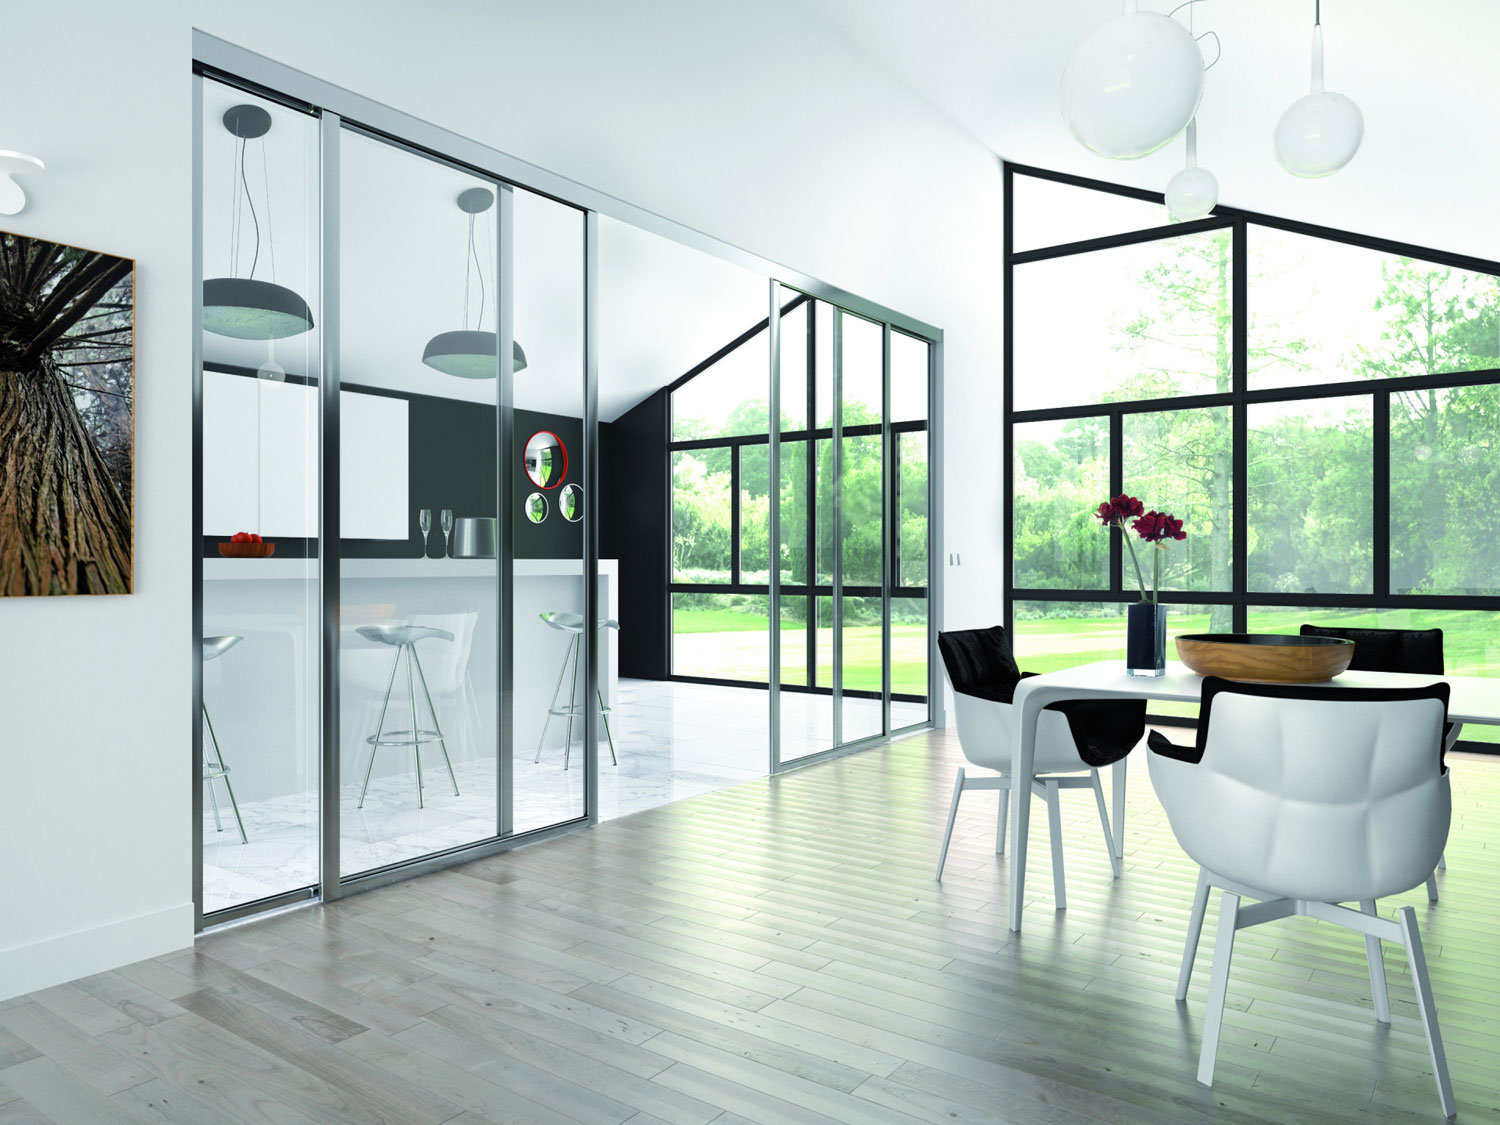 Une salle à manger moderne et spacieuse avec des baies vitrées, dotées d'un cadre noir élégant, offrant une vue sur l'extérieur verdoyant. La pièce est complétée par un noir et blanc minimaliste